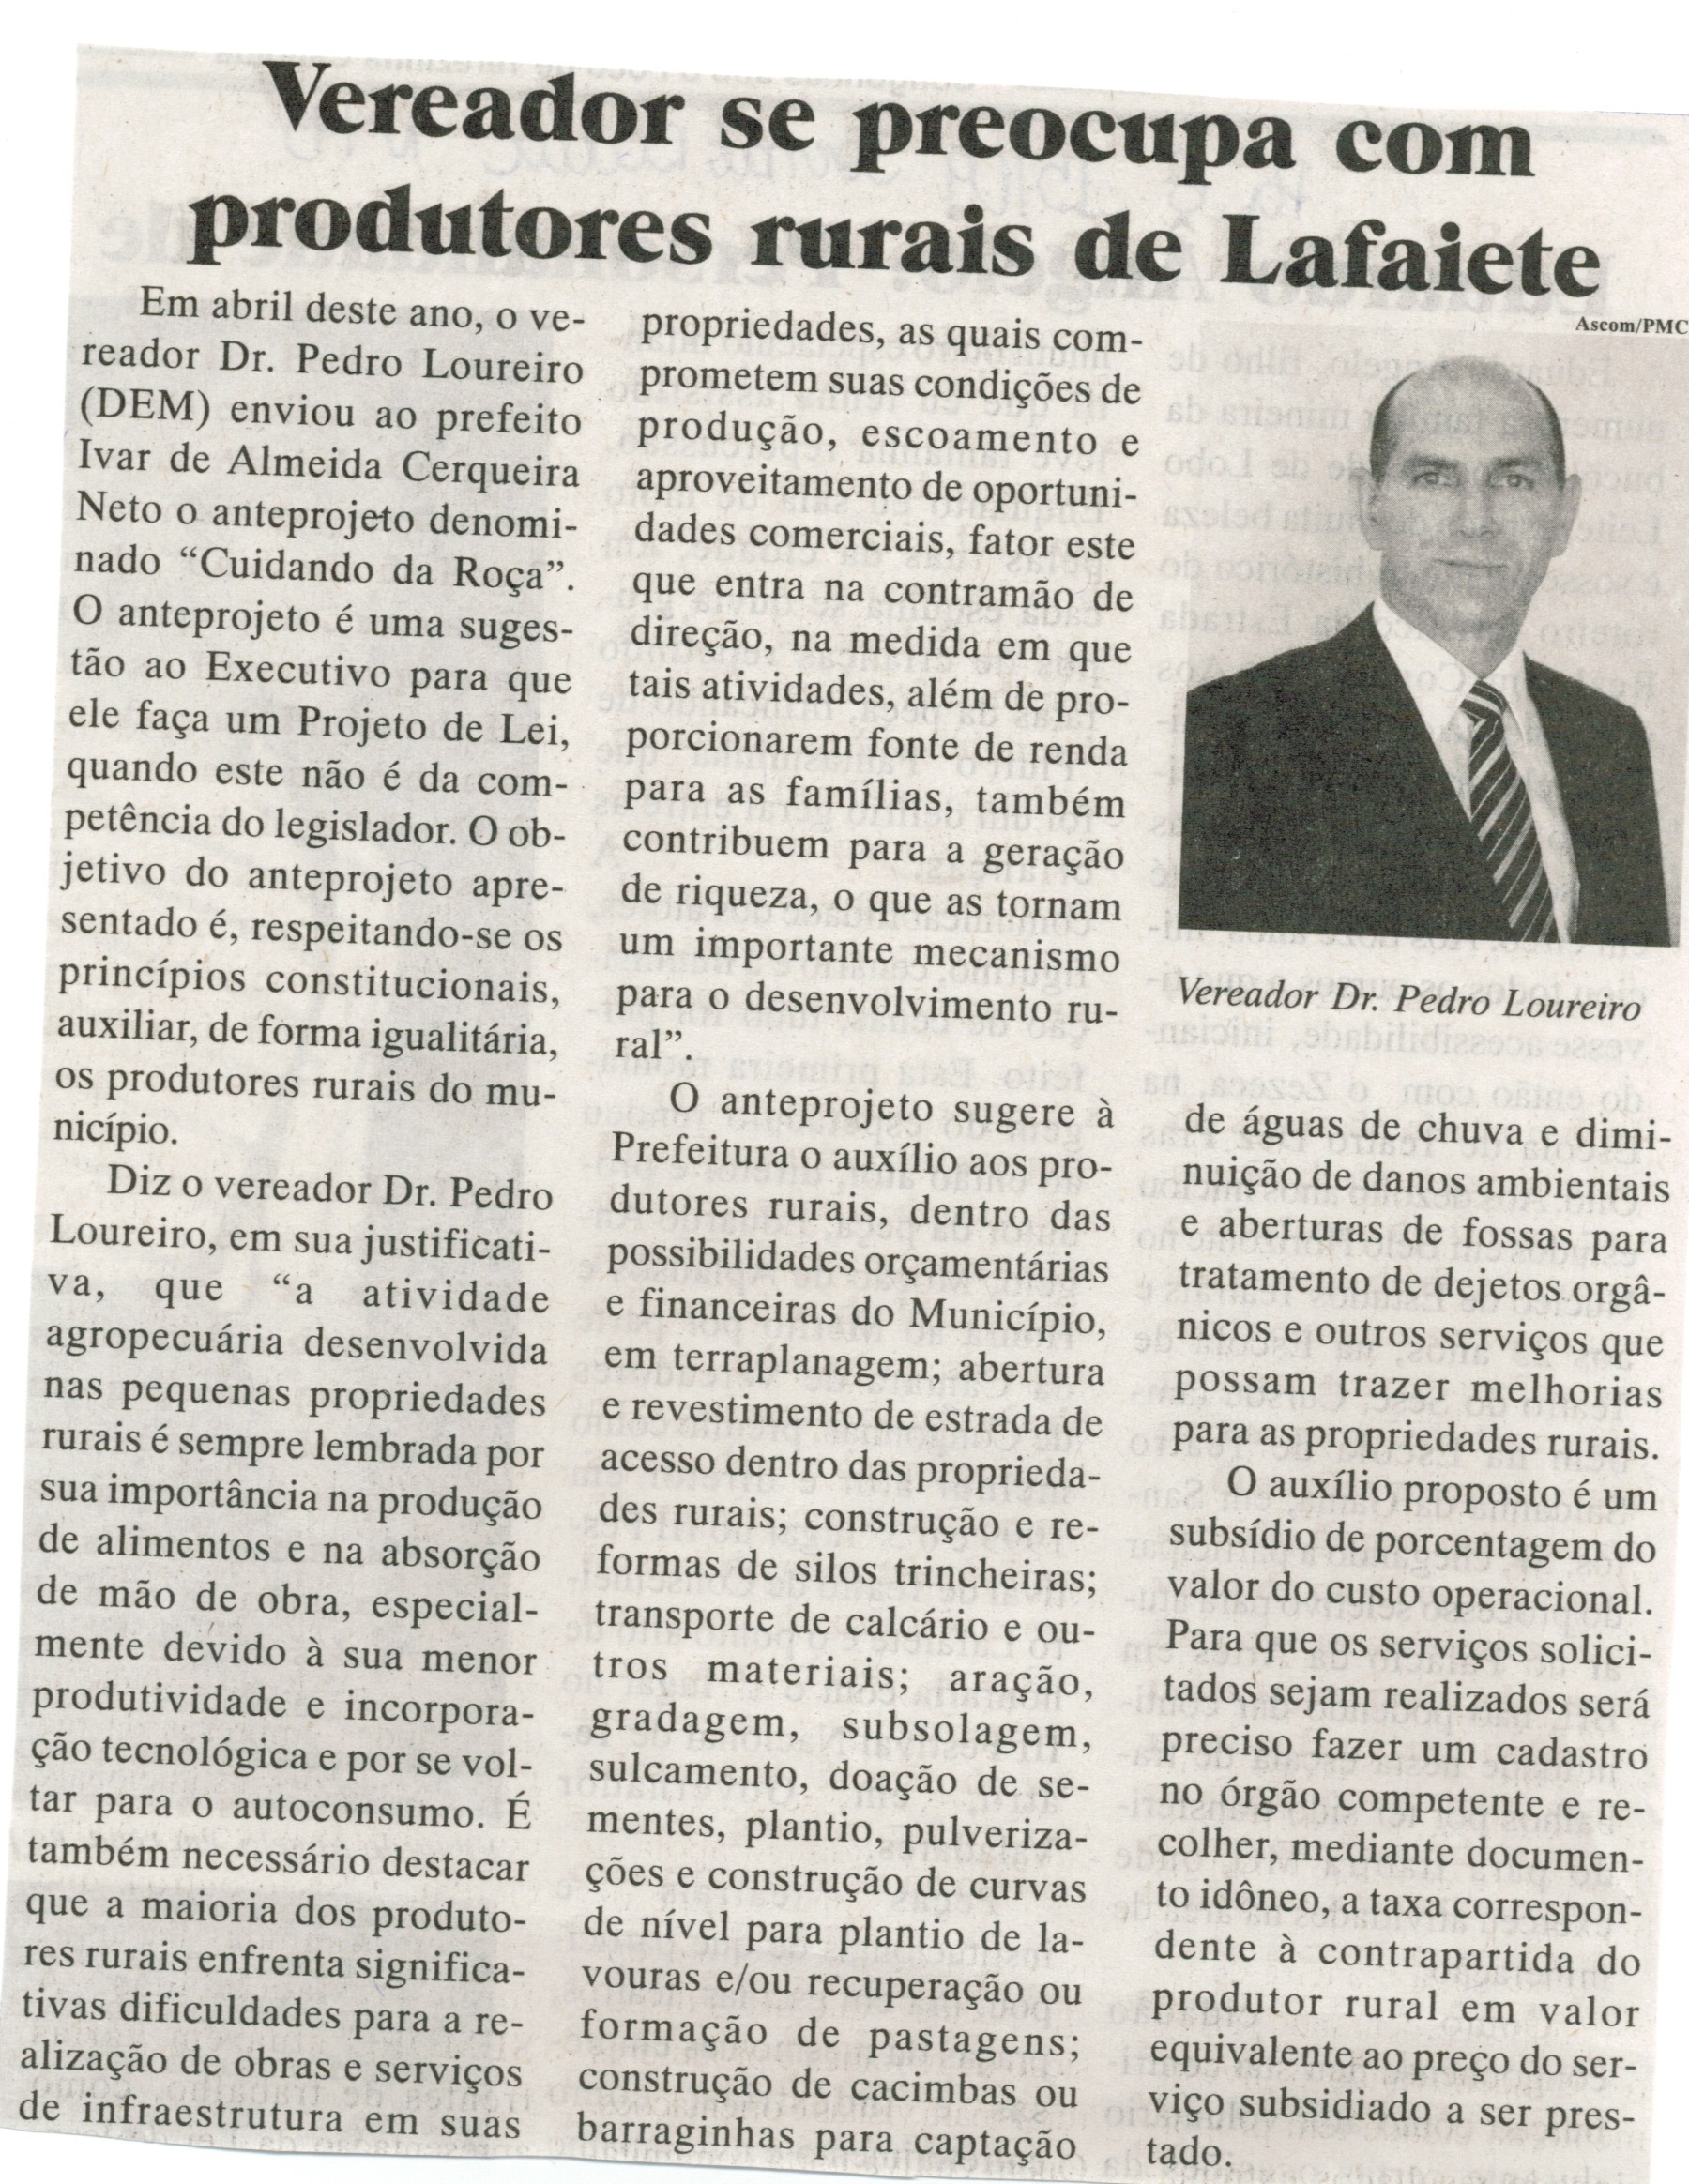 Vereador se preocupa com produtores rurais de Lafaiete. Jornal Baruc, Congonhas,15 set. 2014, p. 6.